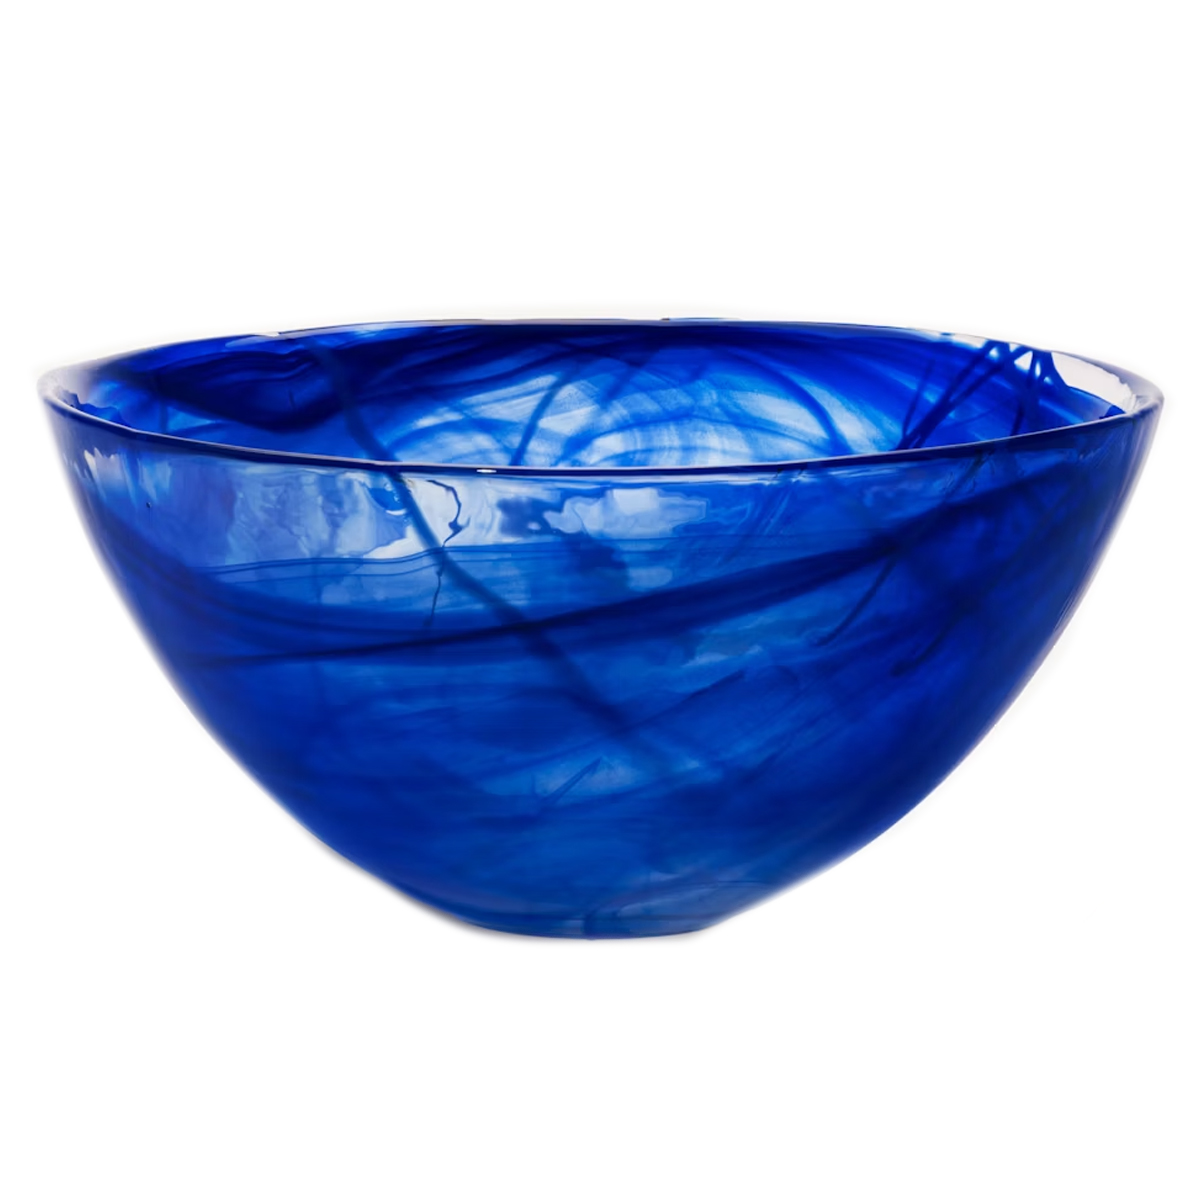 KostaBoda - Large Blue/Blue Contrast Bowl